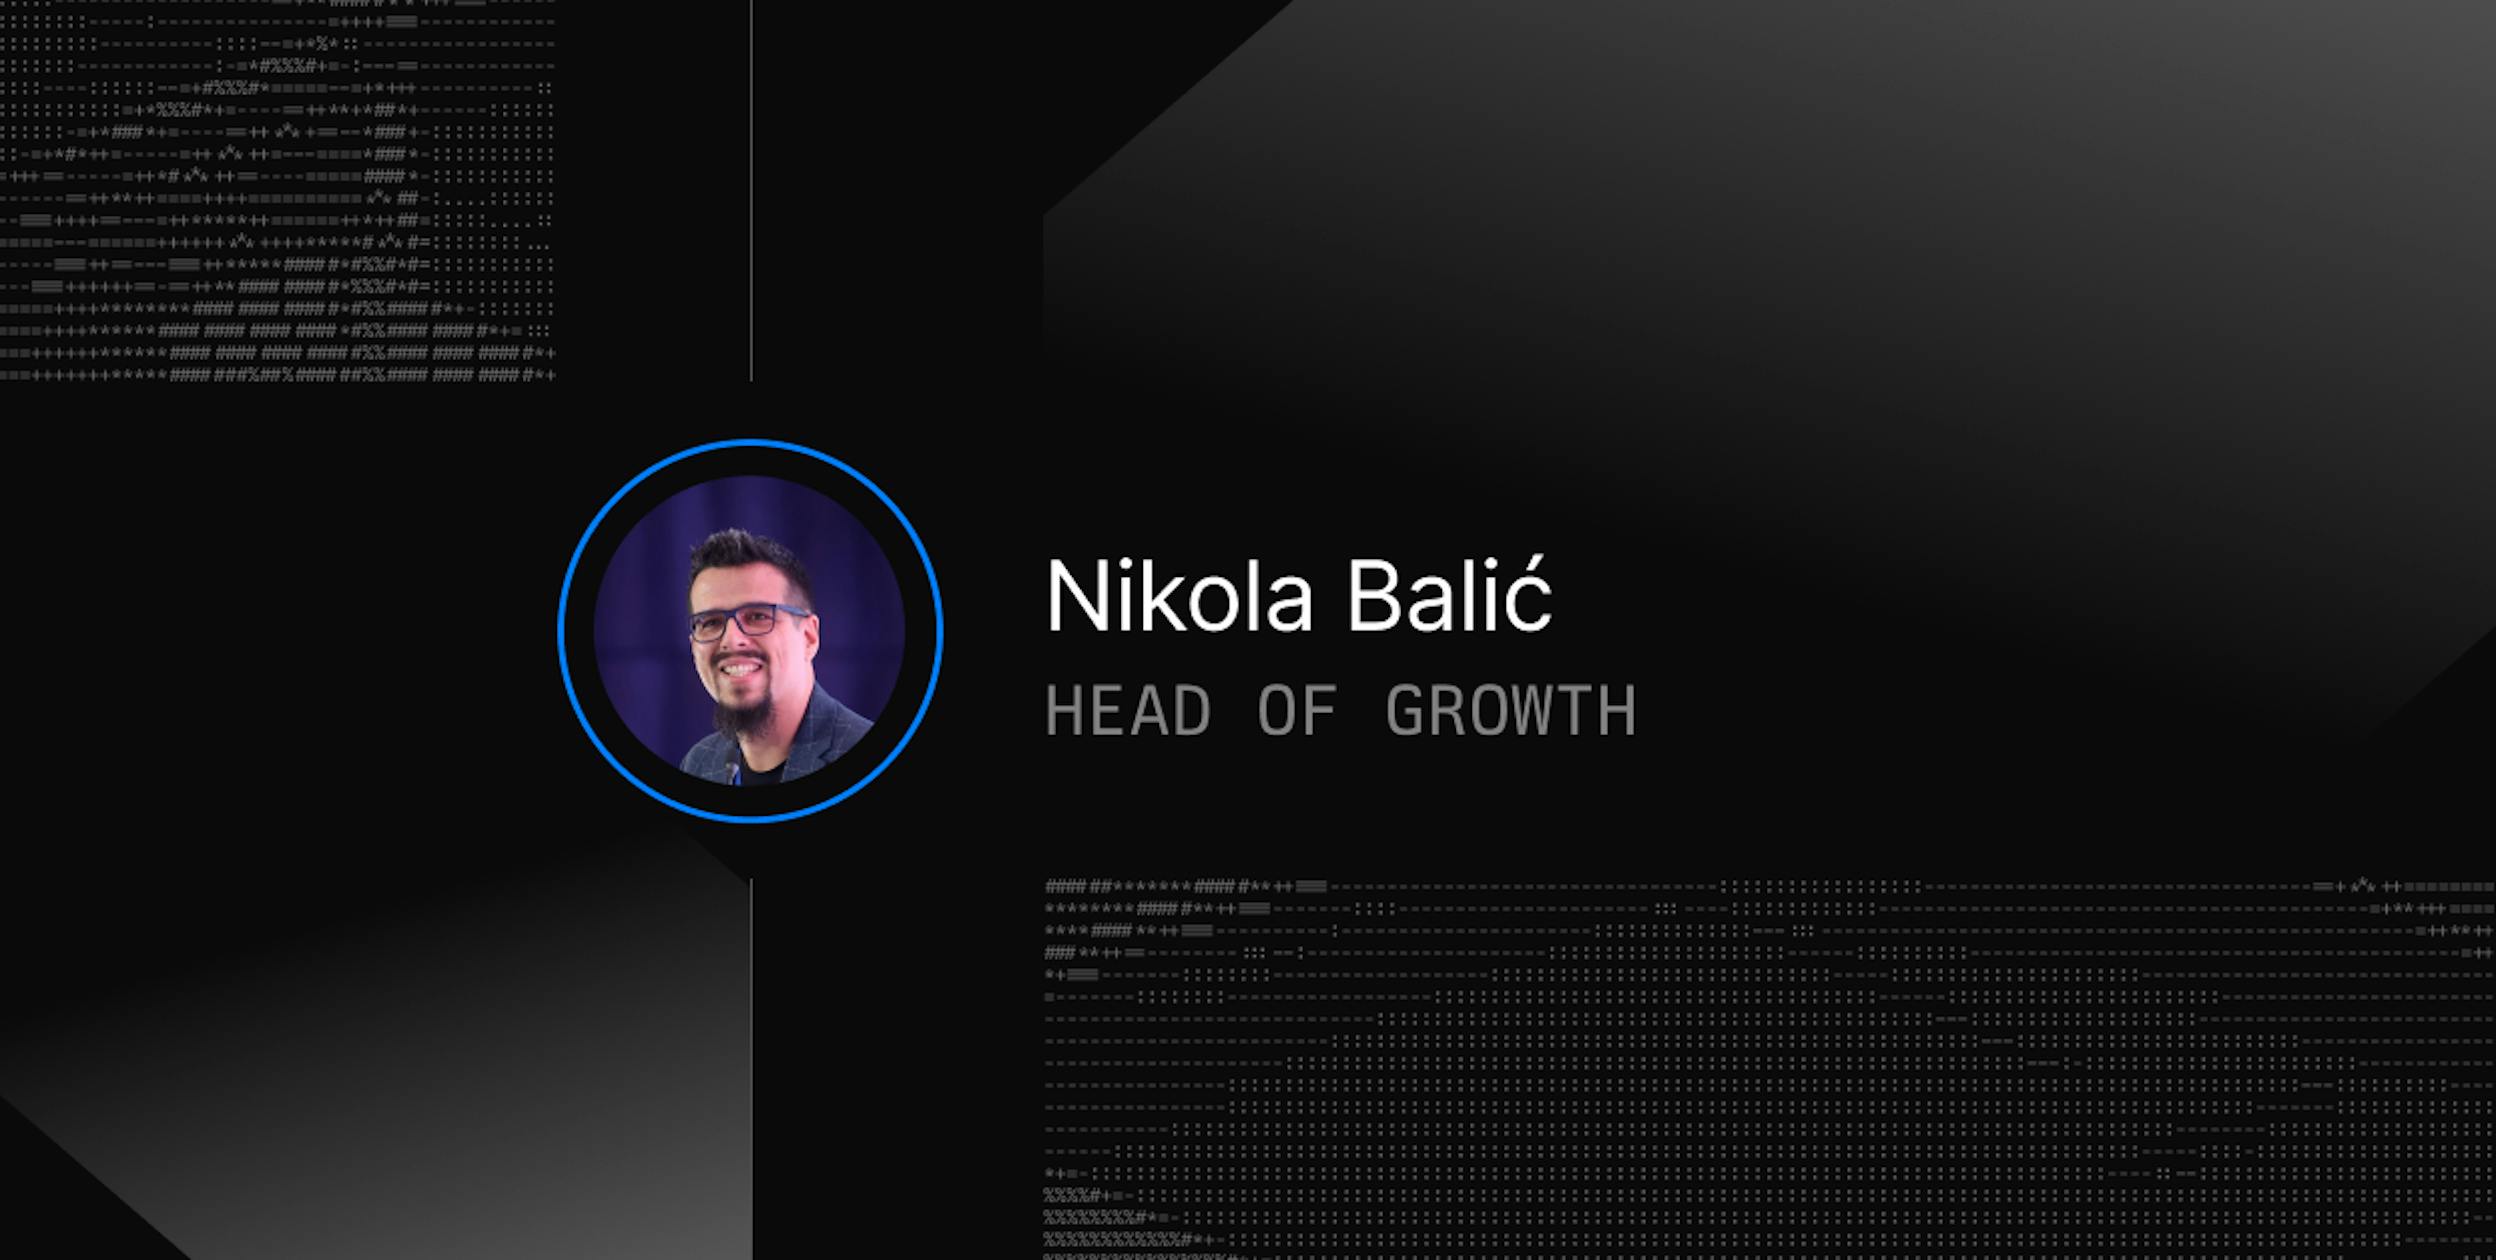 Meet Nikola Balić, Our Head of Growth